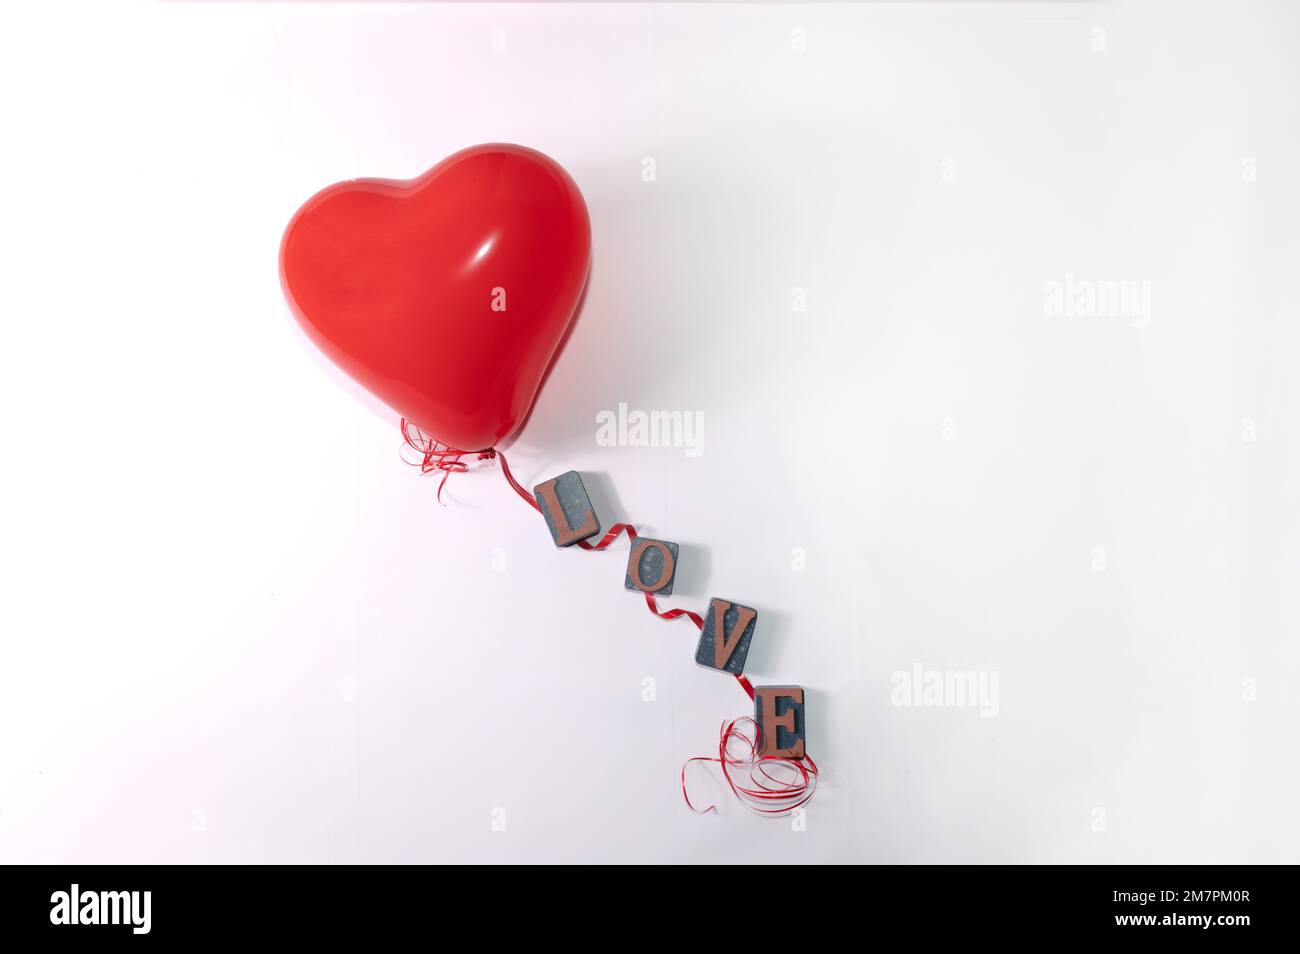 Palloncino a forma di cuore rosso e cordicella rossa con lettere per la parola amore su sfondo bianco Foto Stock